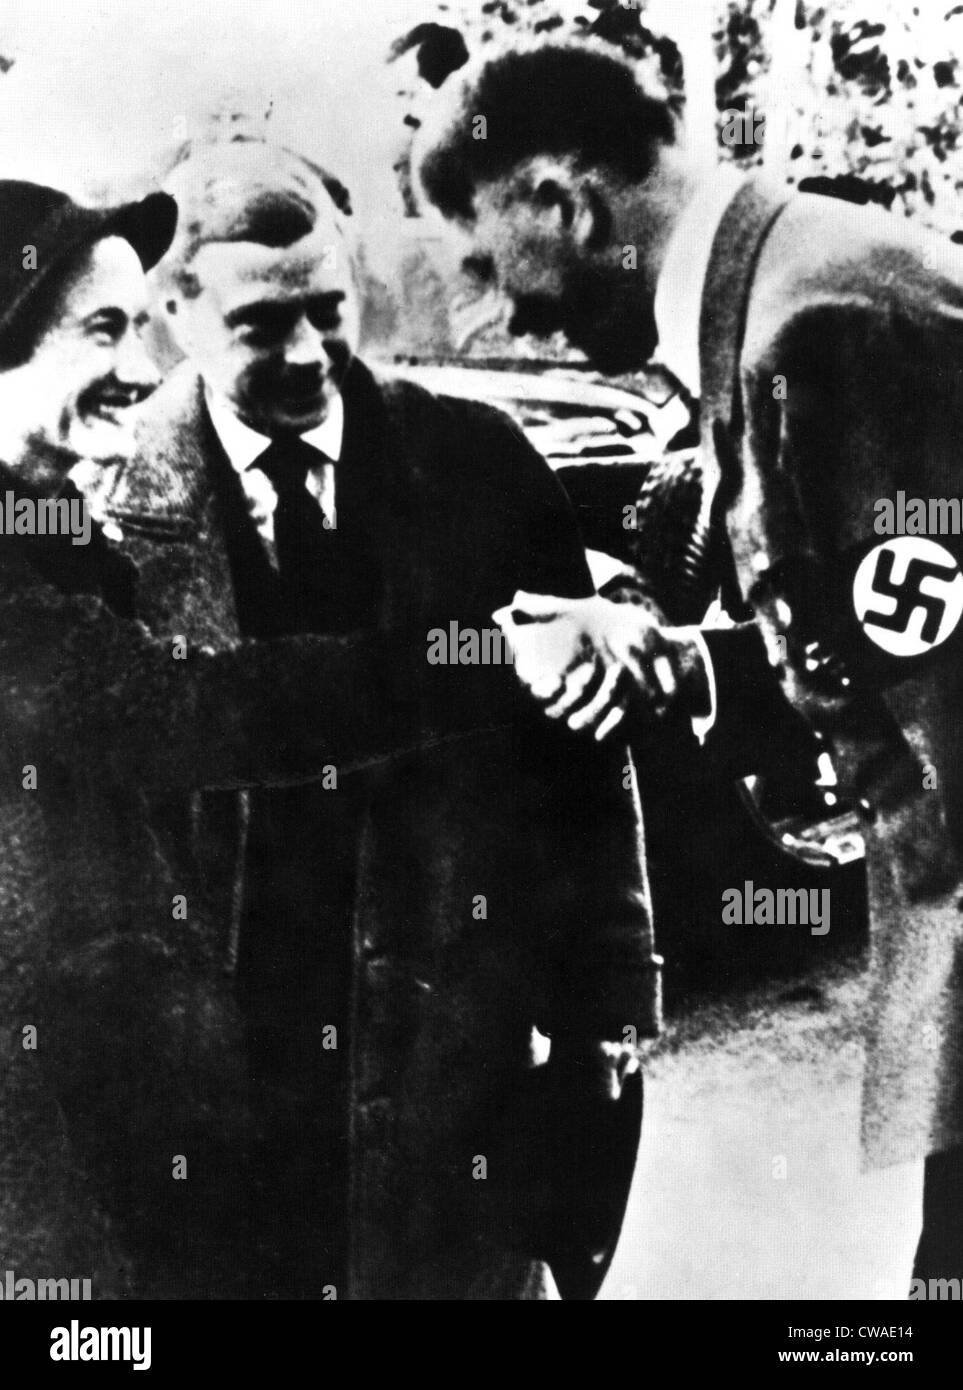 HERZOGIN von WINDSOR WALLIS SIMPSON, mit dem Herzog von Windsor und Adolf Hitler. Höflichkeit: CSU Archive / Everett Collection Stockfoto